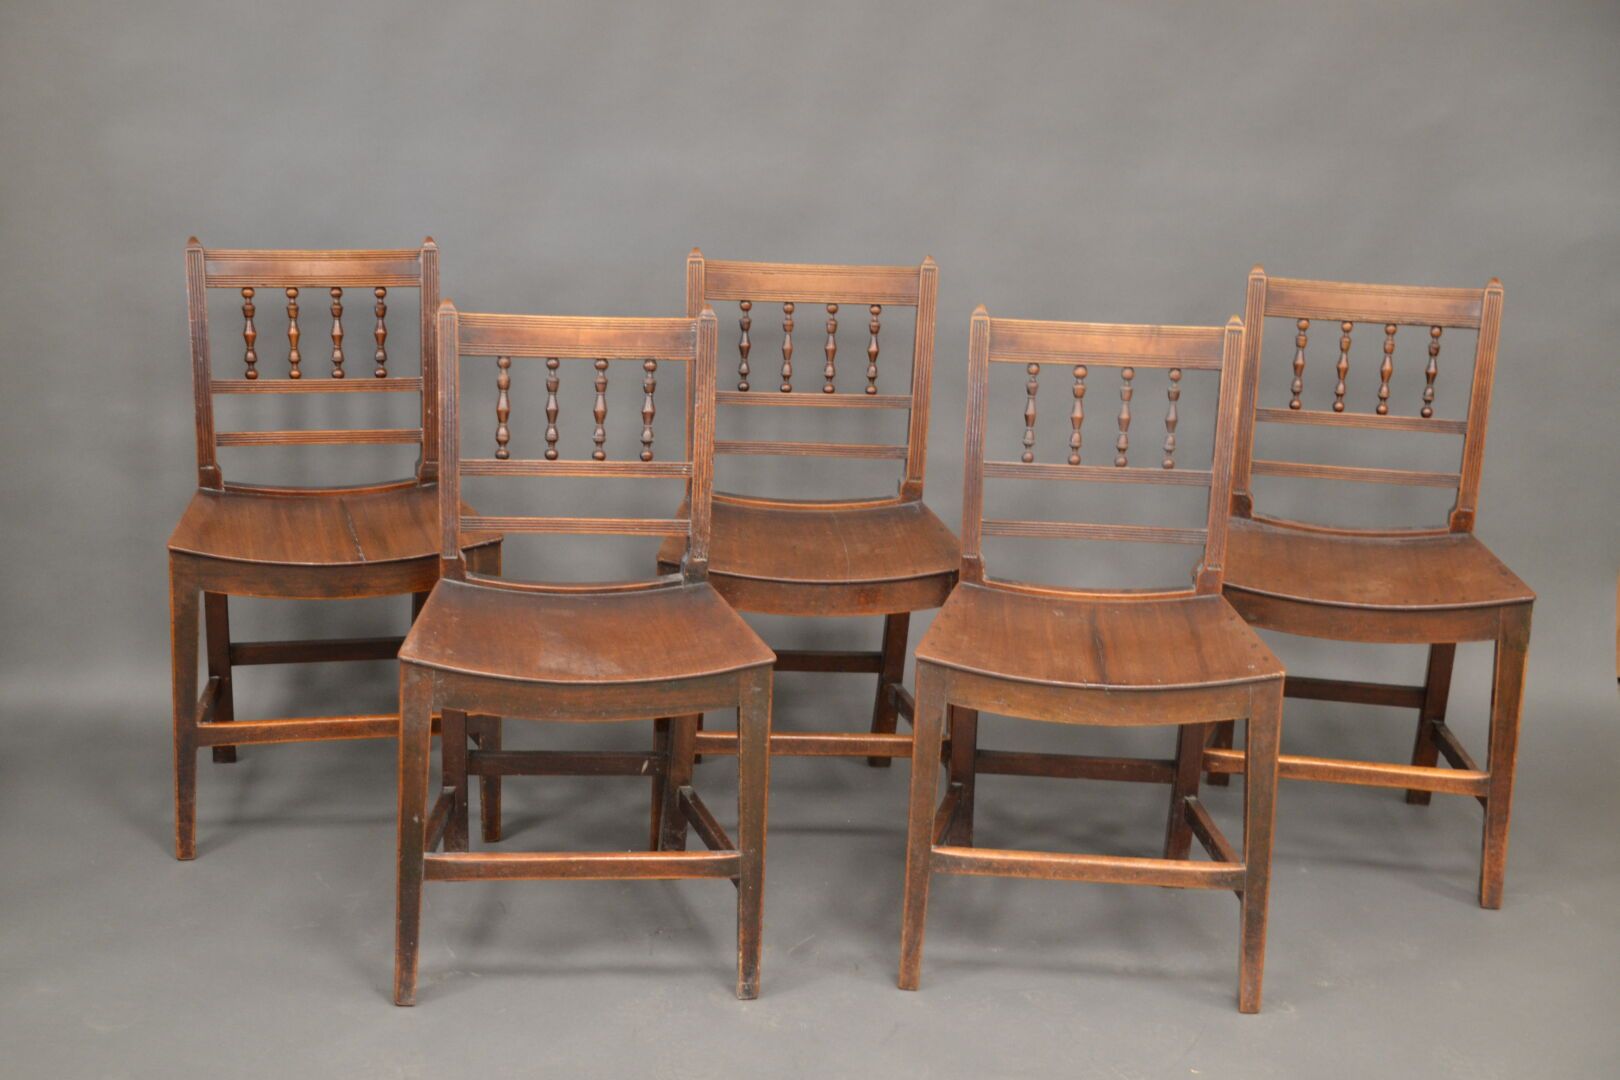 Null 一套五把桃花心木椅子，木质座椅，带状椅背。英格兰，十九世纪。83 厘米，宽 38 厘米，长 47 厘米。